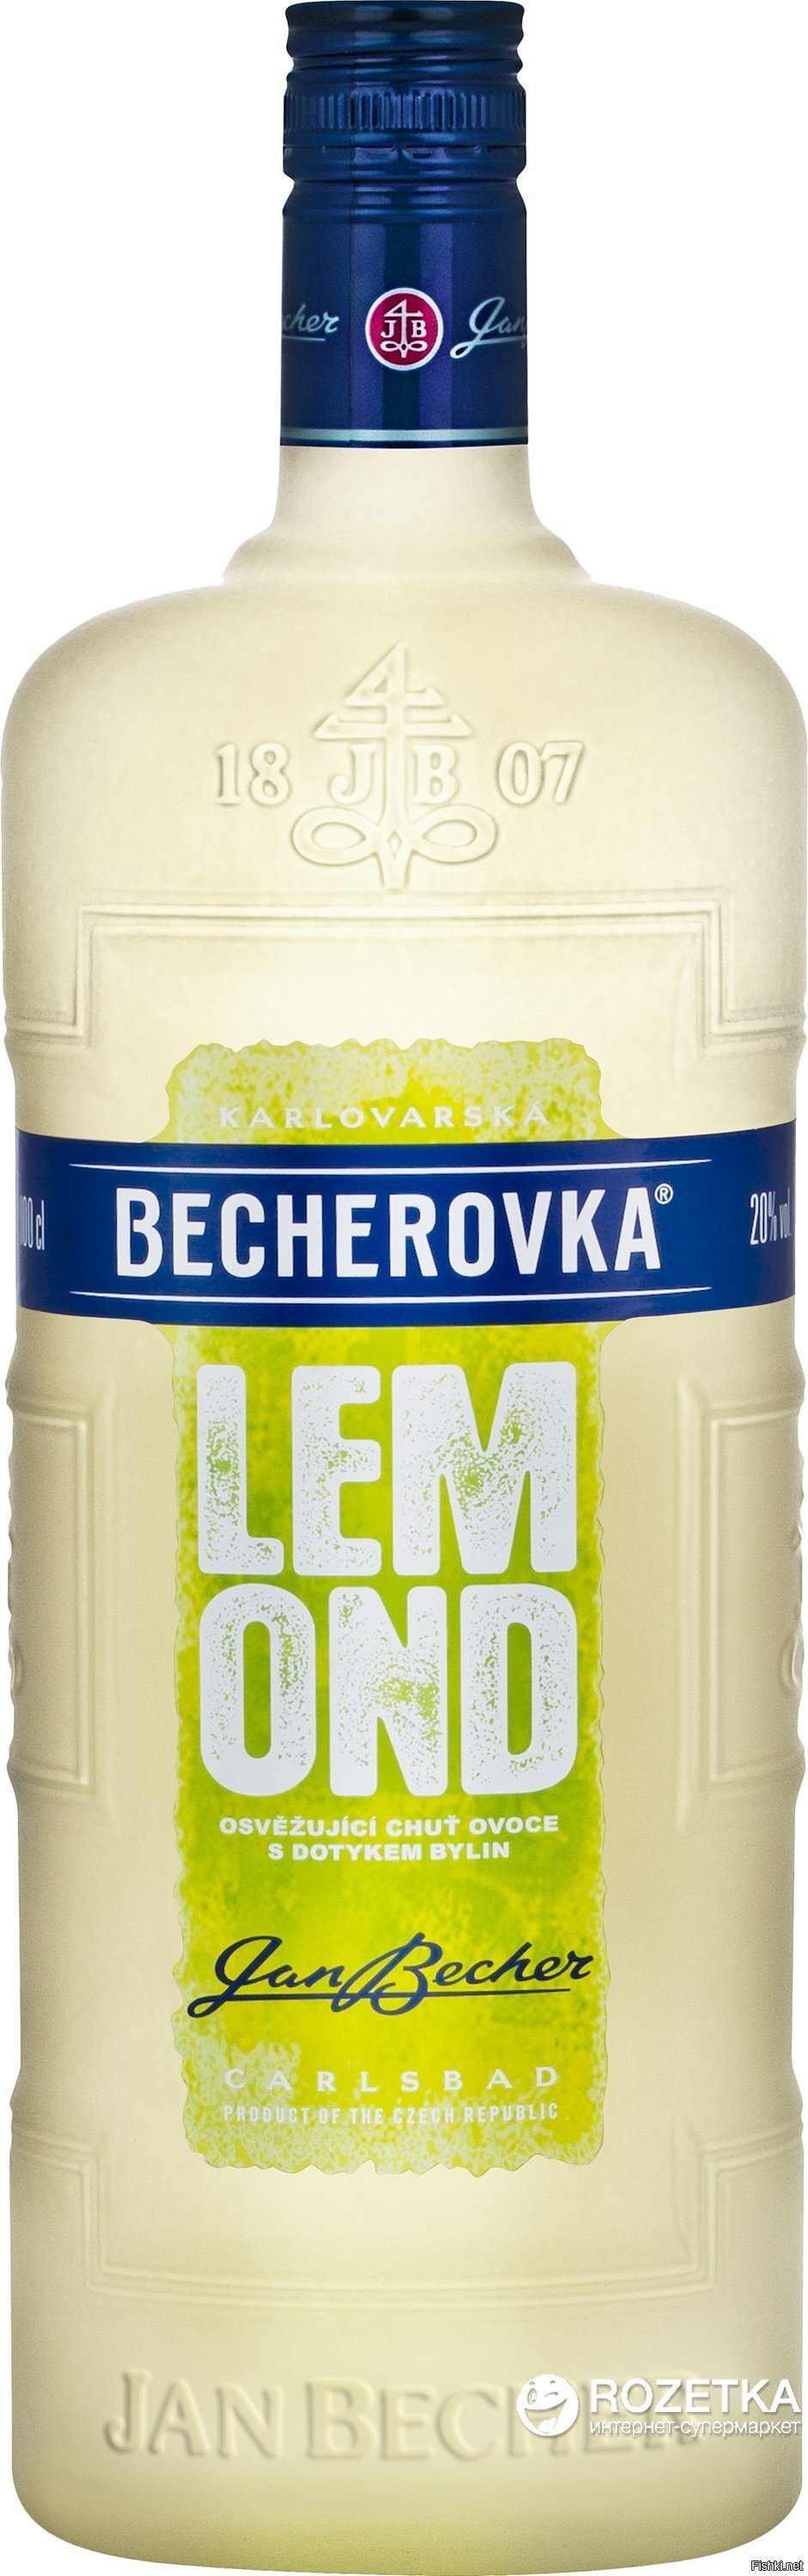 увидел в магазине Бехеровку-лимон